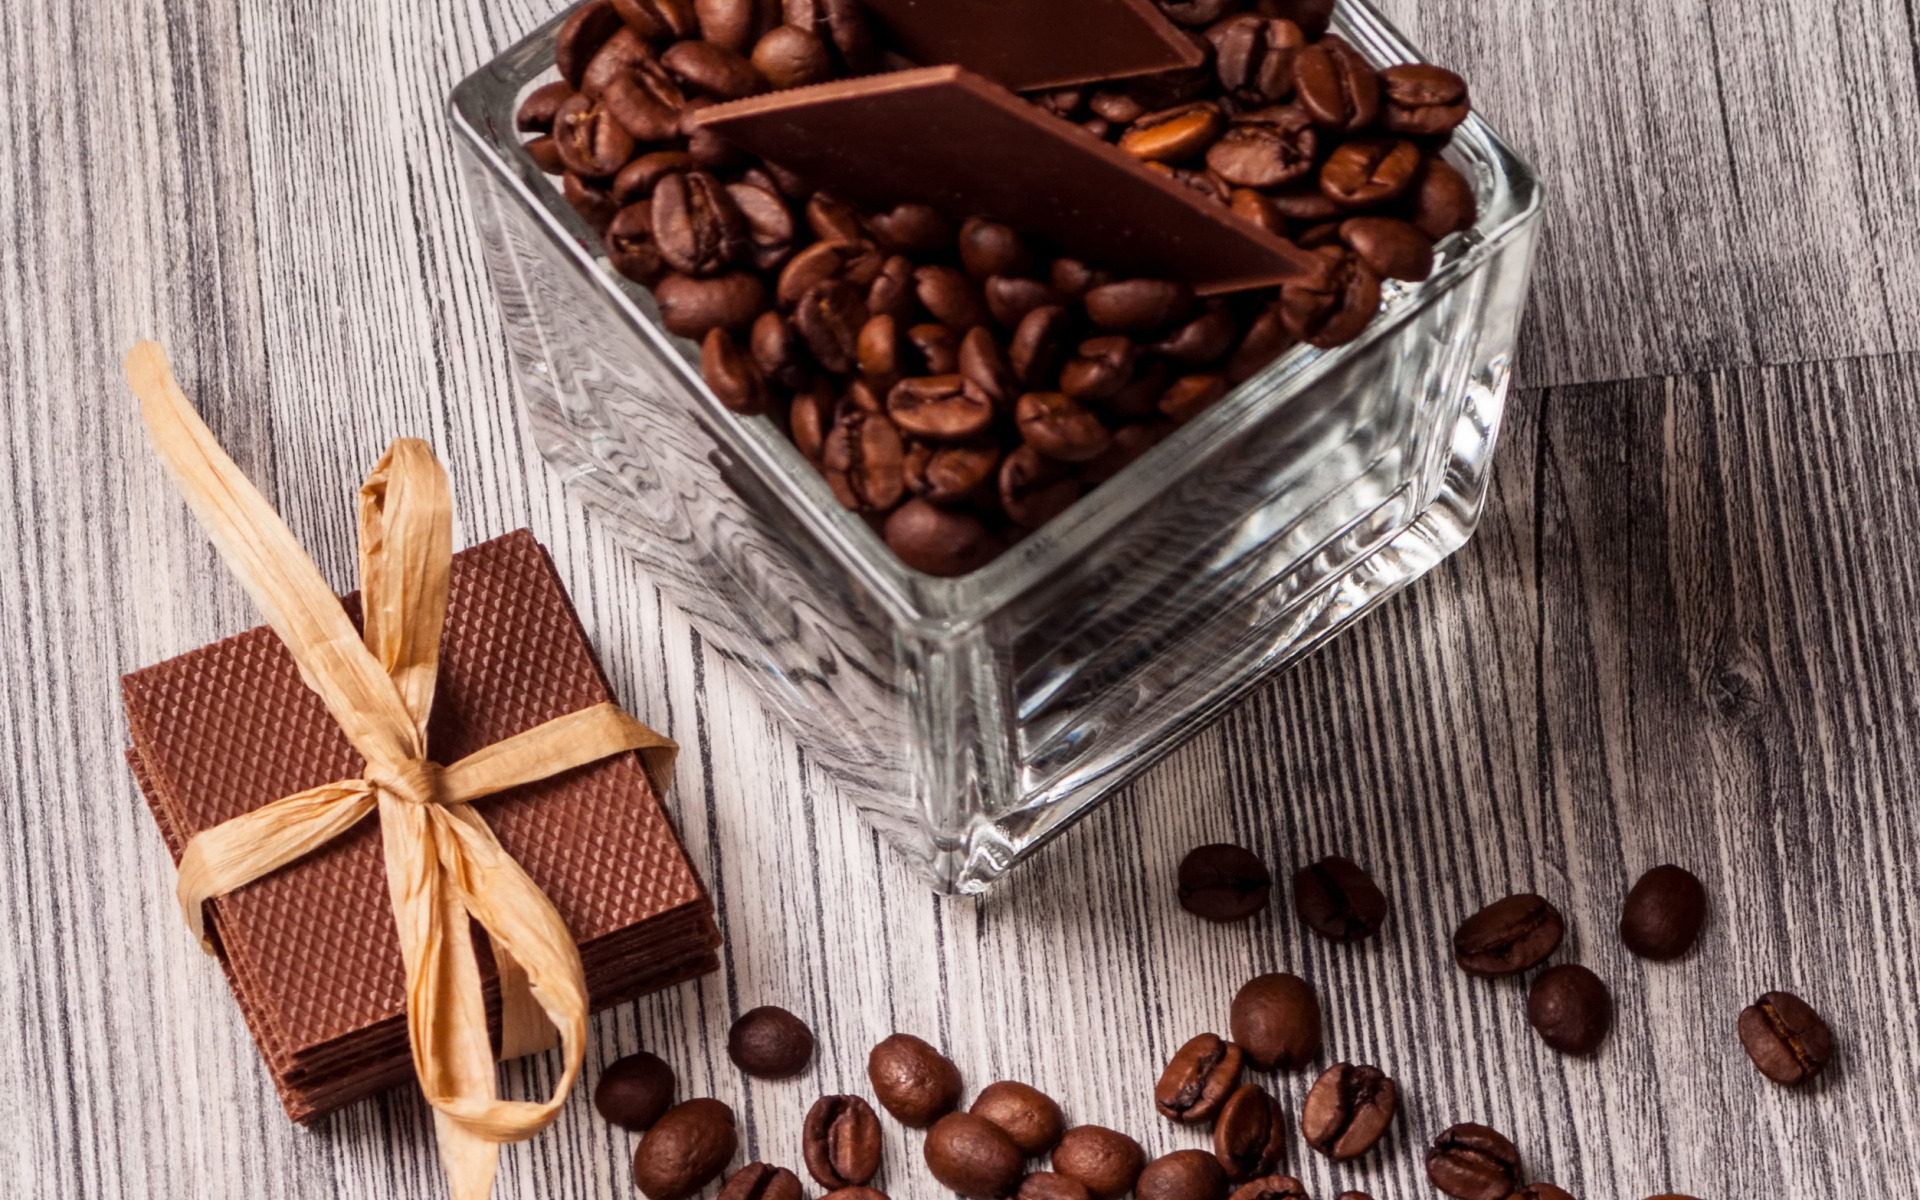 Зерна шоколада. Кофейные зерна. Кофе и шоколад. Конфеты кофейные зерна. Шоколадные конфеты с кофейными зернами.